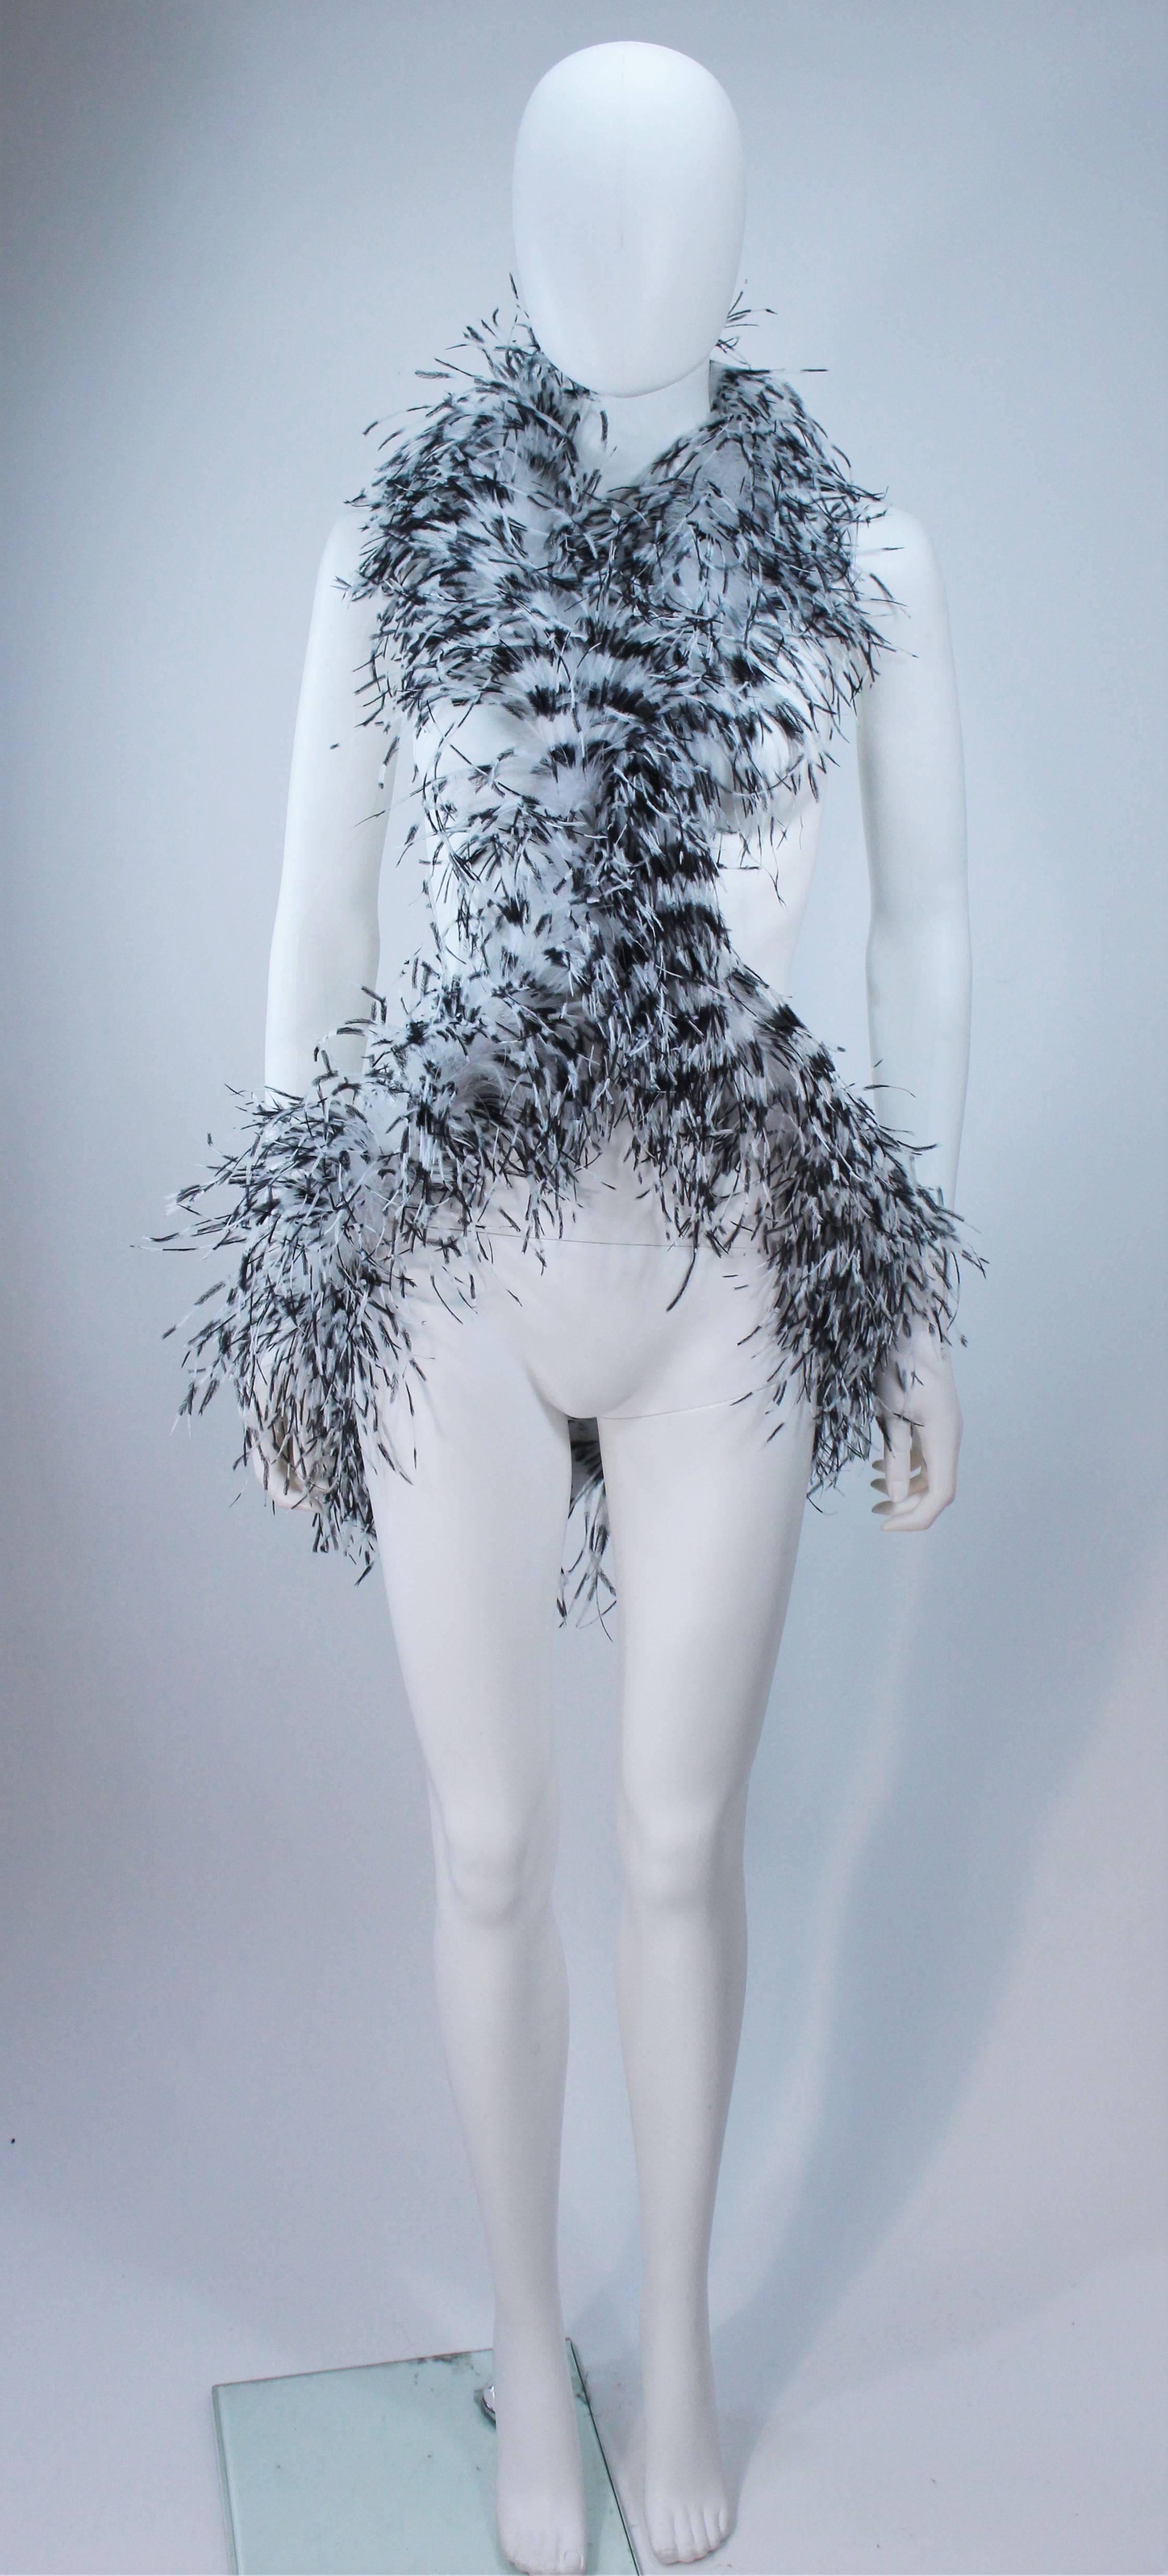 Dieses Elizabeth Mason Couture-Tuch besteht aus einer Straußenboa, die sich mit einem Strass-Magnetverschluss um den Körper wickelt. Hergestellt in Beverly Hills

Dies ist eine Couture-Bestellung, die in einer Vielzahl von Farbkombinationen